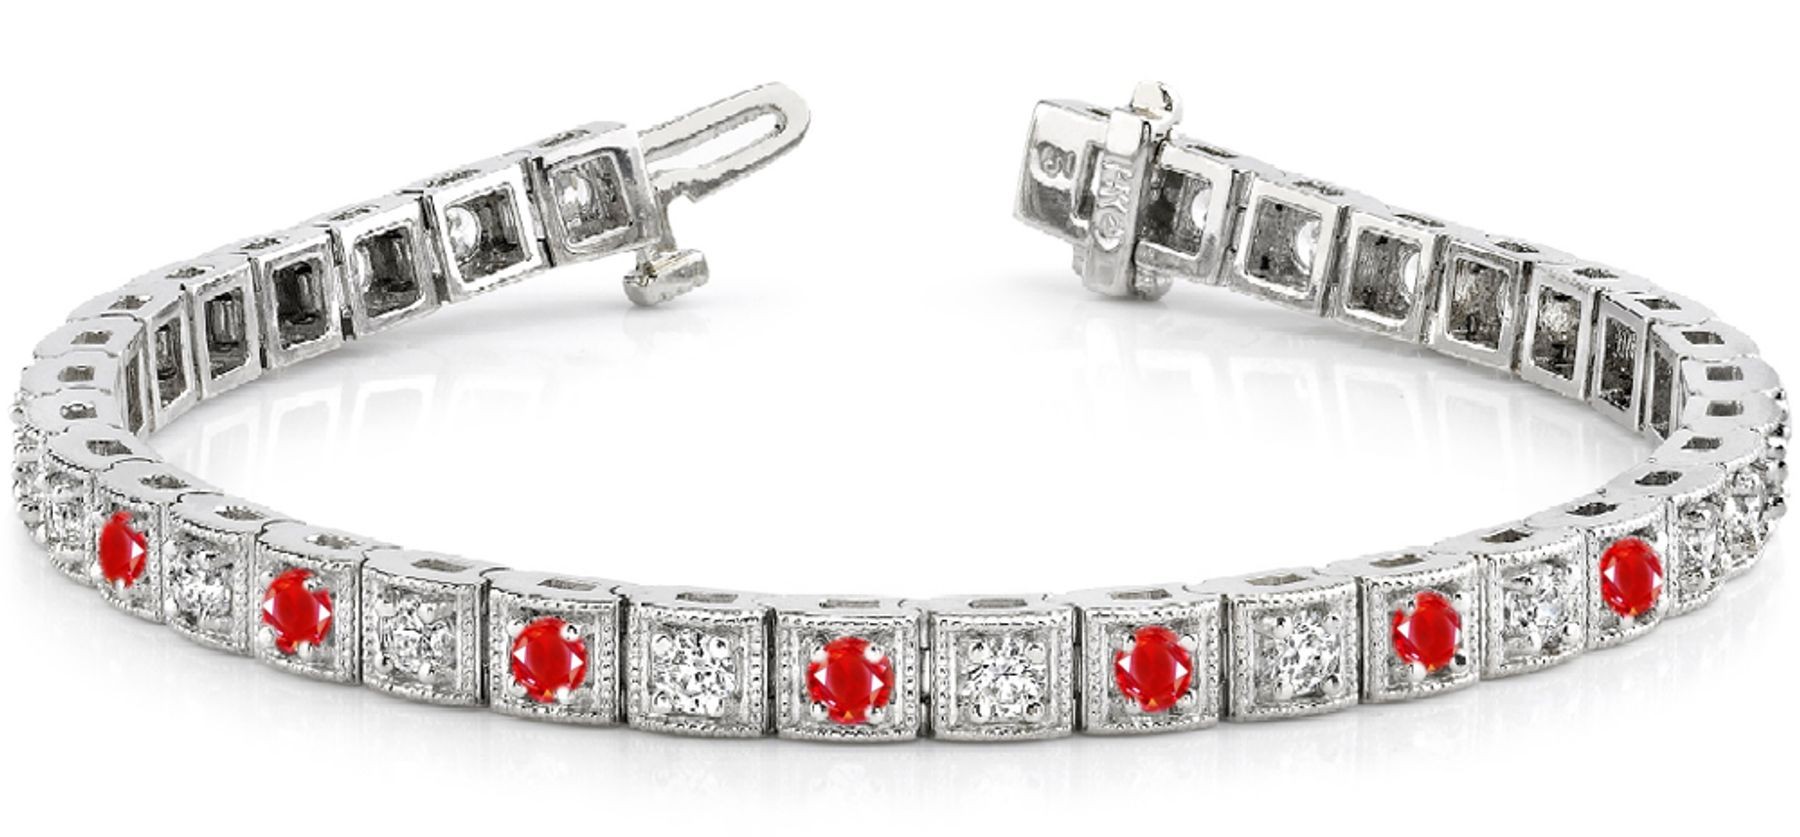 Ruby & Diamond Bracelet and Necklace